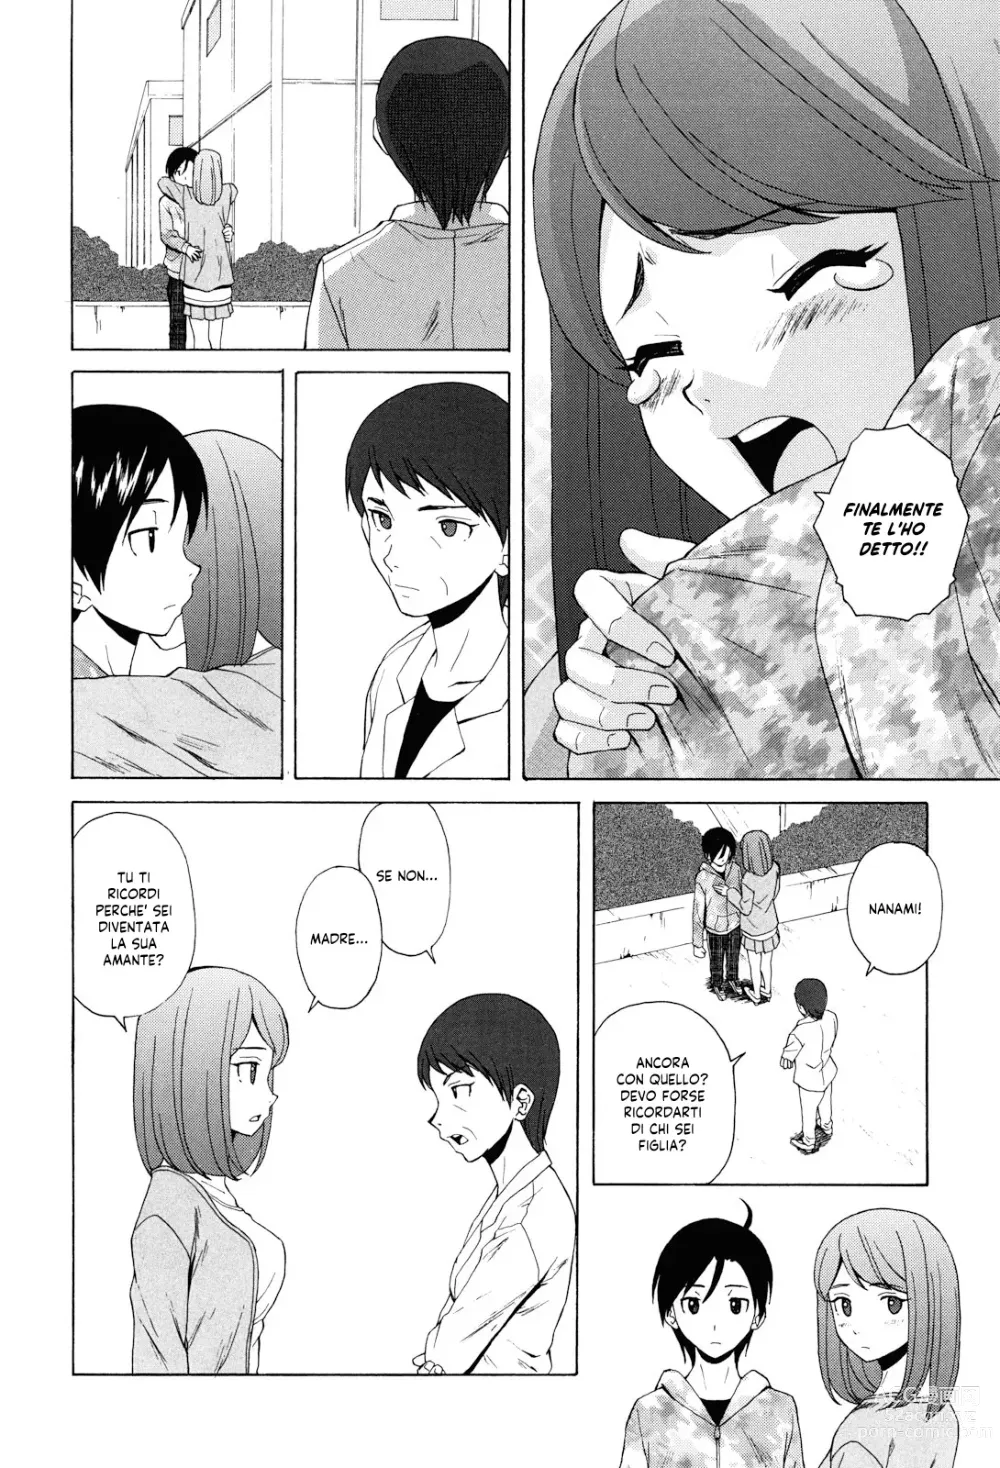 Page 249 of manga Sei Gentilmente Desiderato dalla tua Prof (decensored)